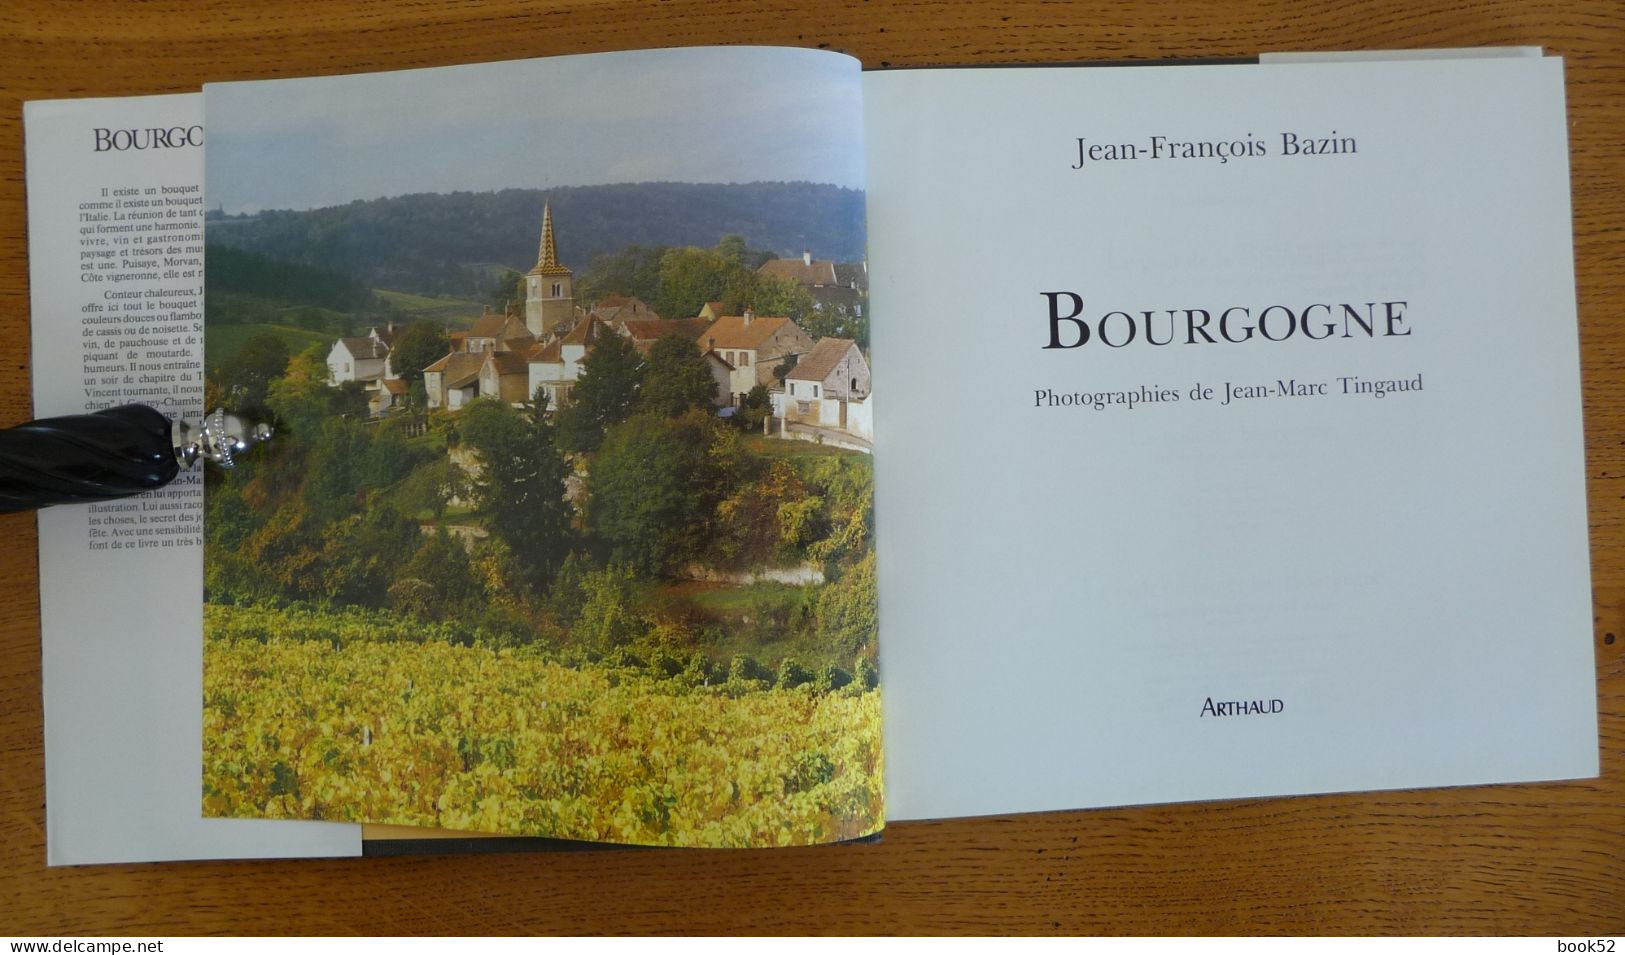 BOURGOGNE (J.-F. Bazin - J.-M. Tingaud) - Bourgogne